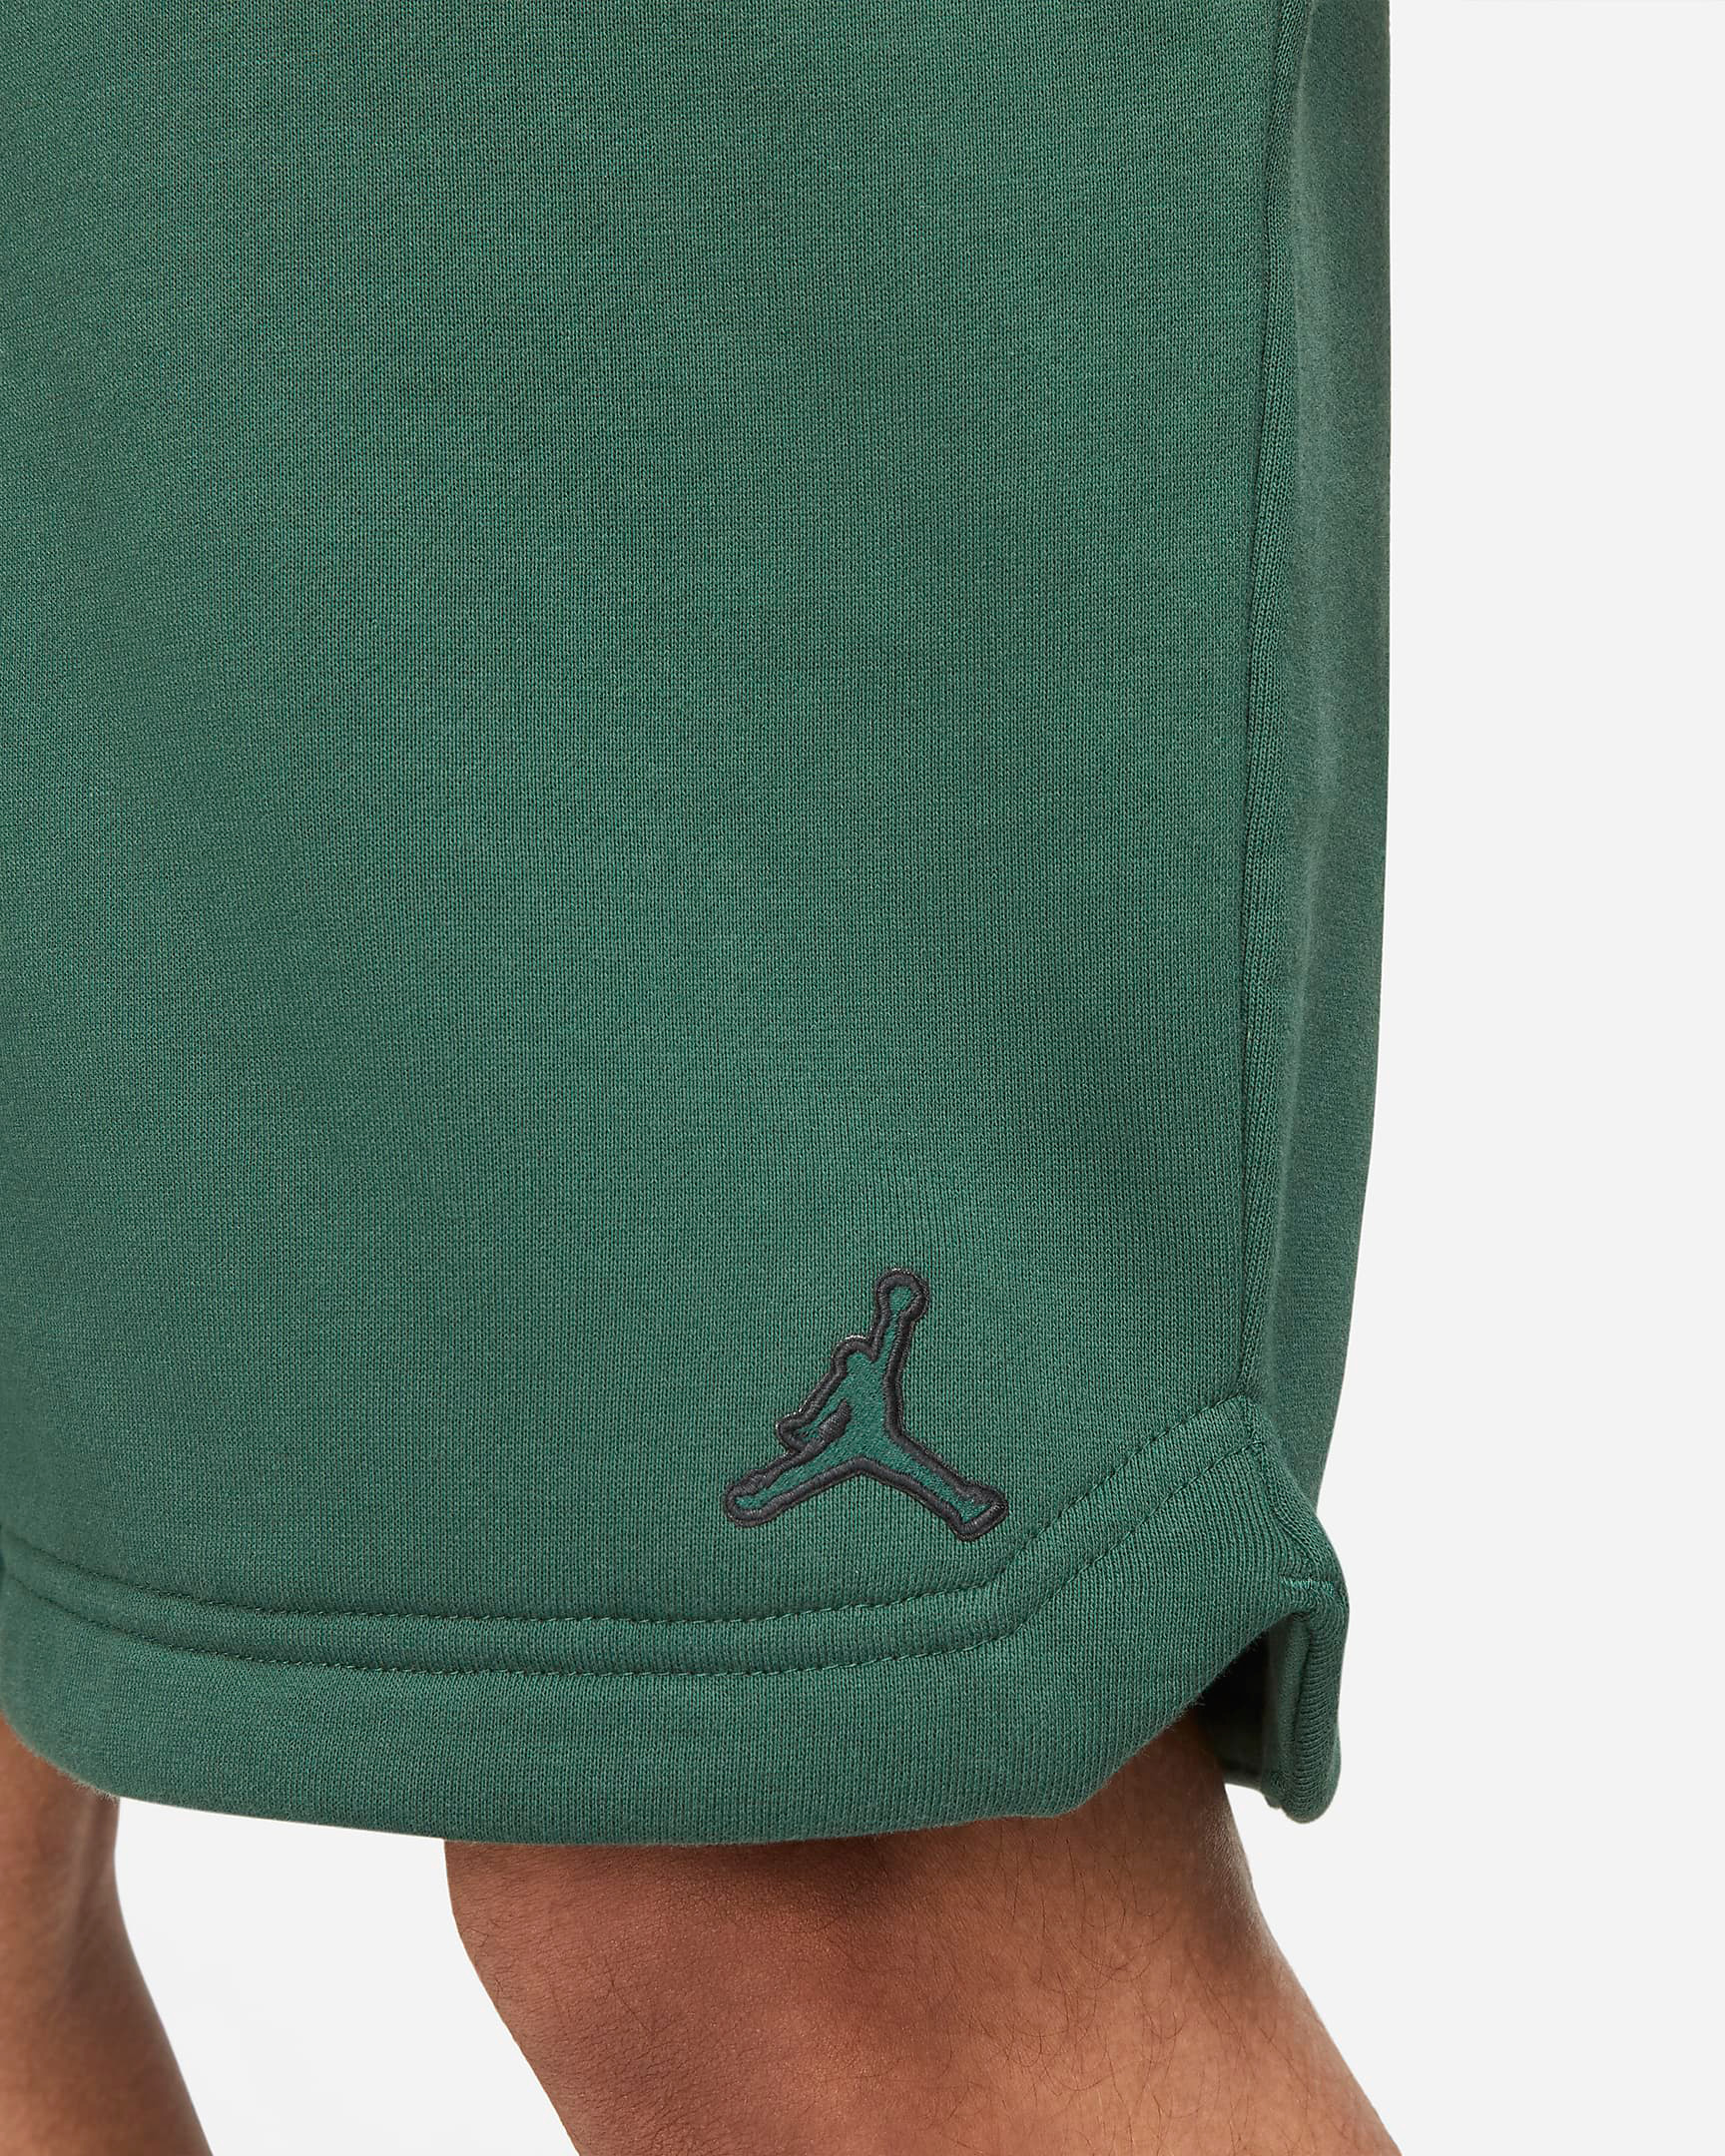 jordan-noble-green-essentials-fleece-shorts-4